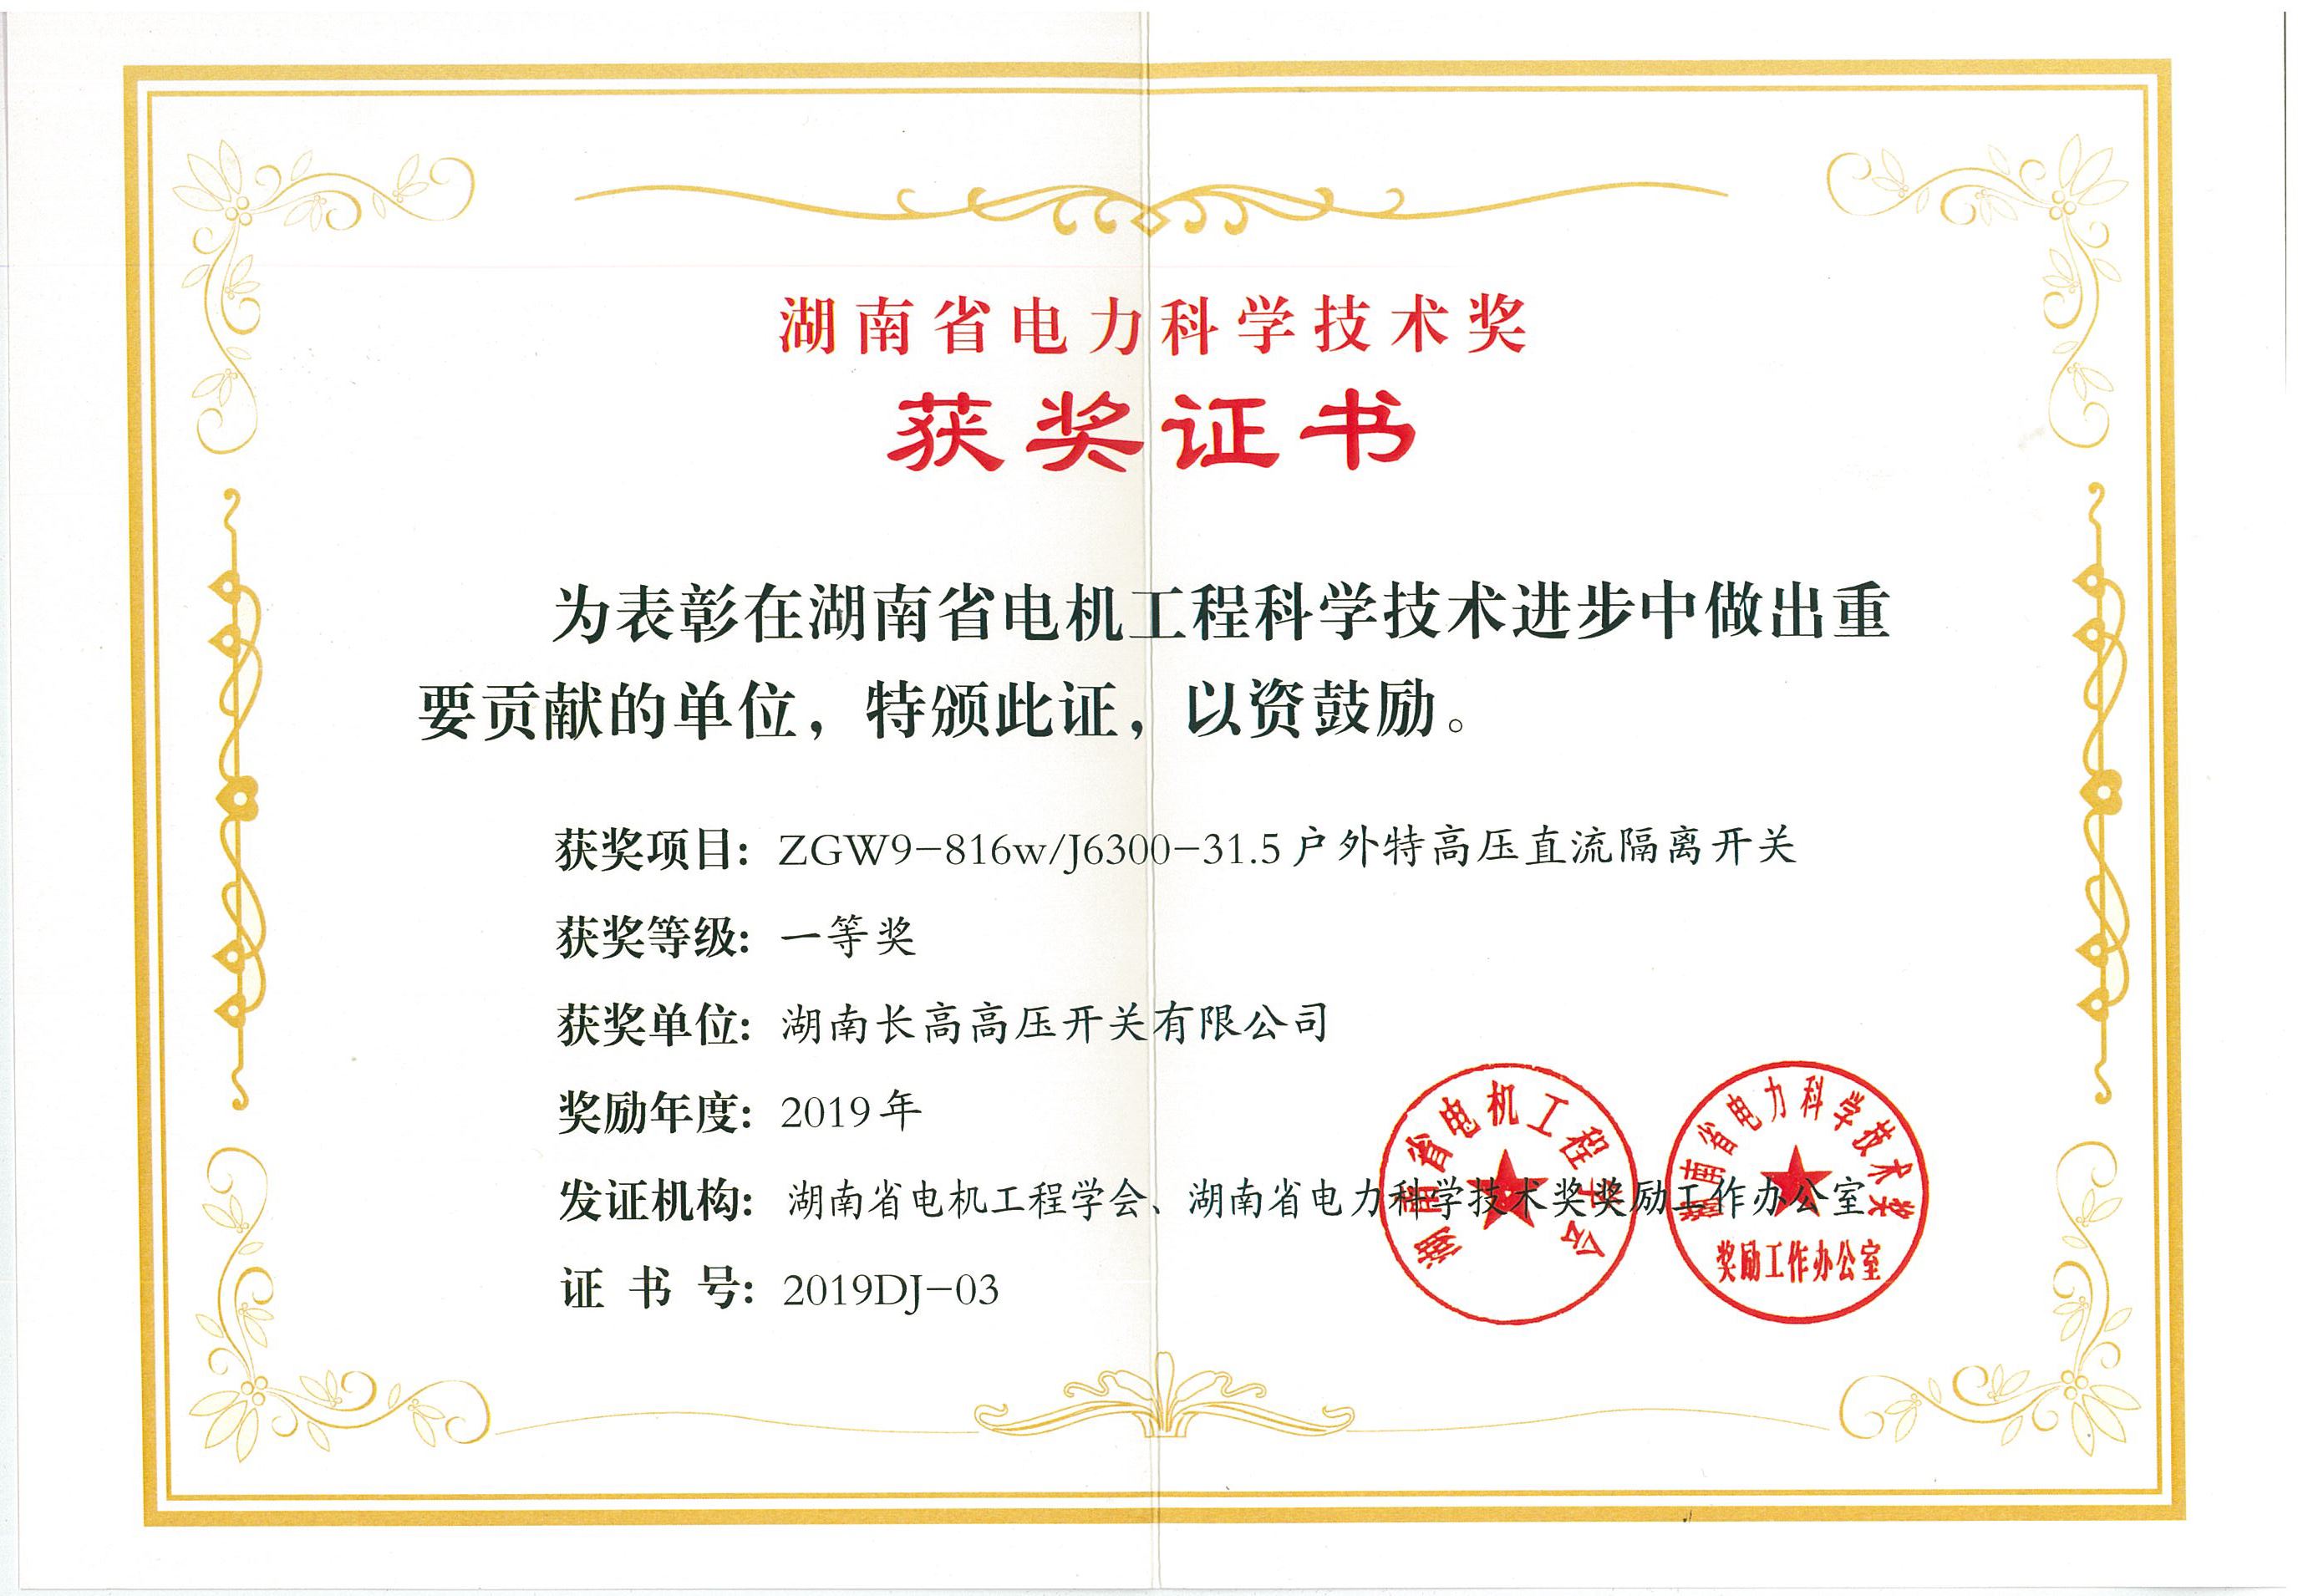  长高集团2项目获湖南省电力科学技术奖